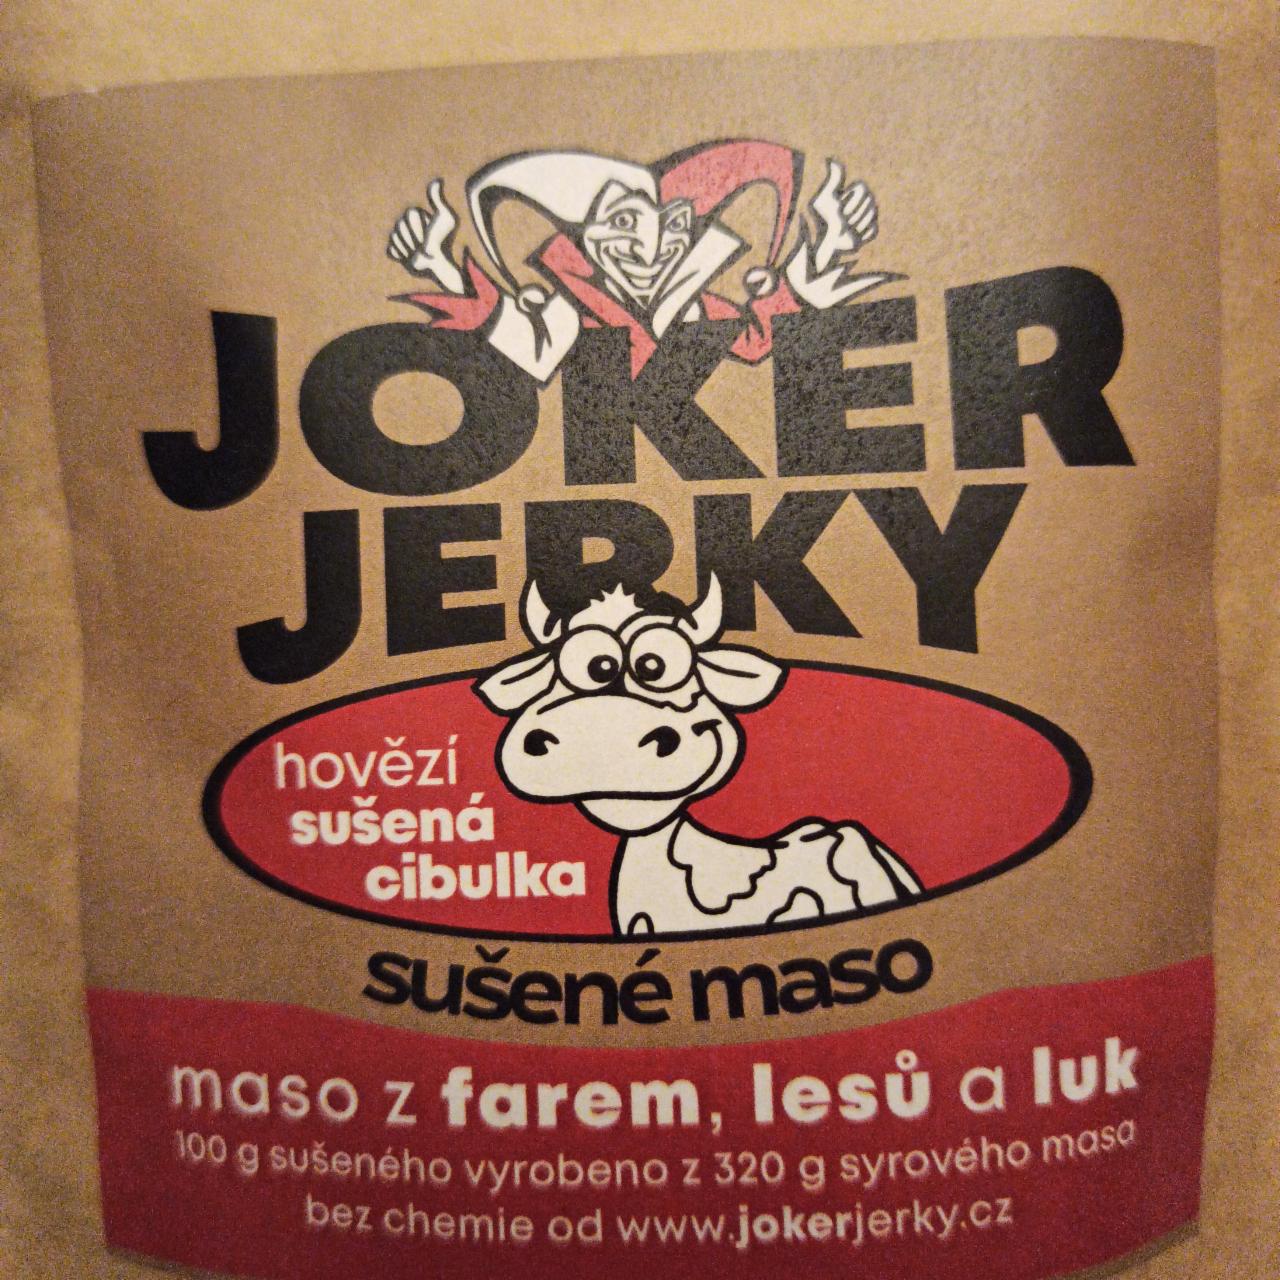 Fotografie - Hovězí sušená cibulka sušené maso Joker Jerky